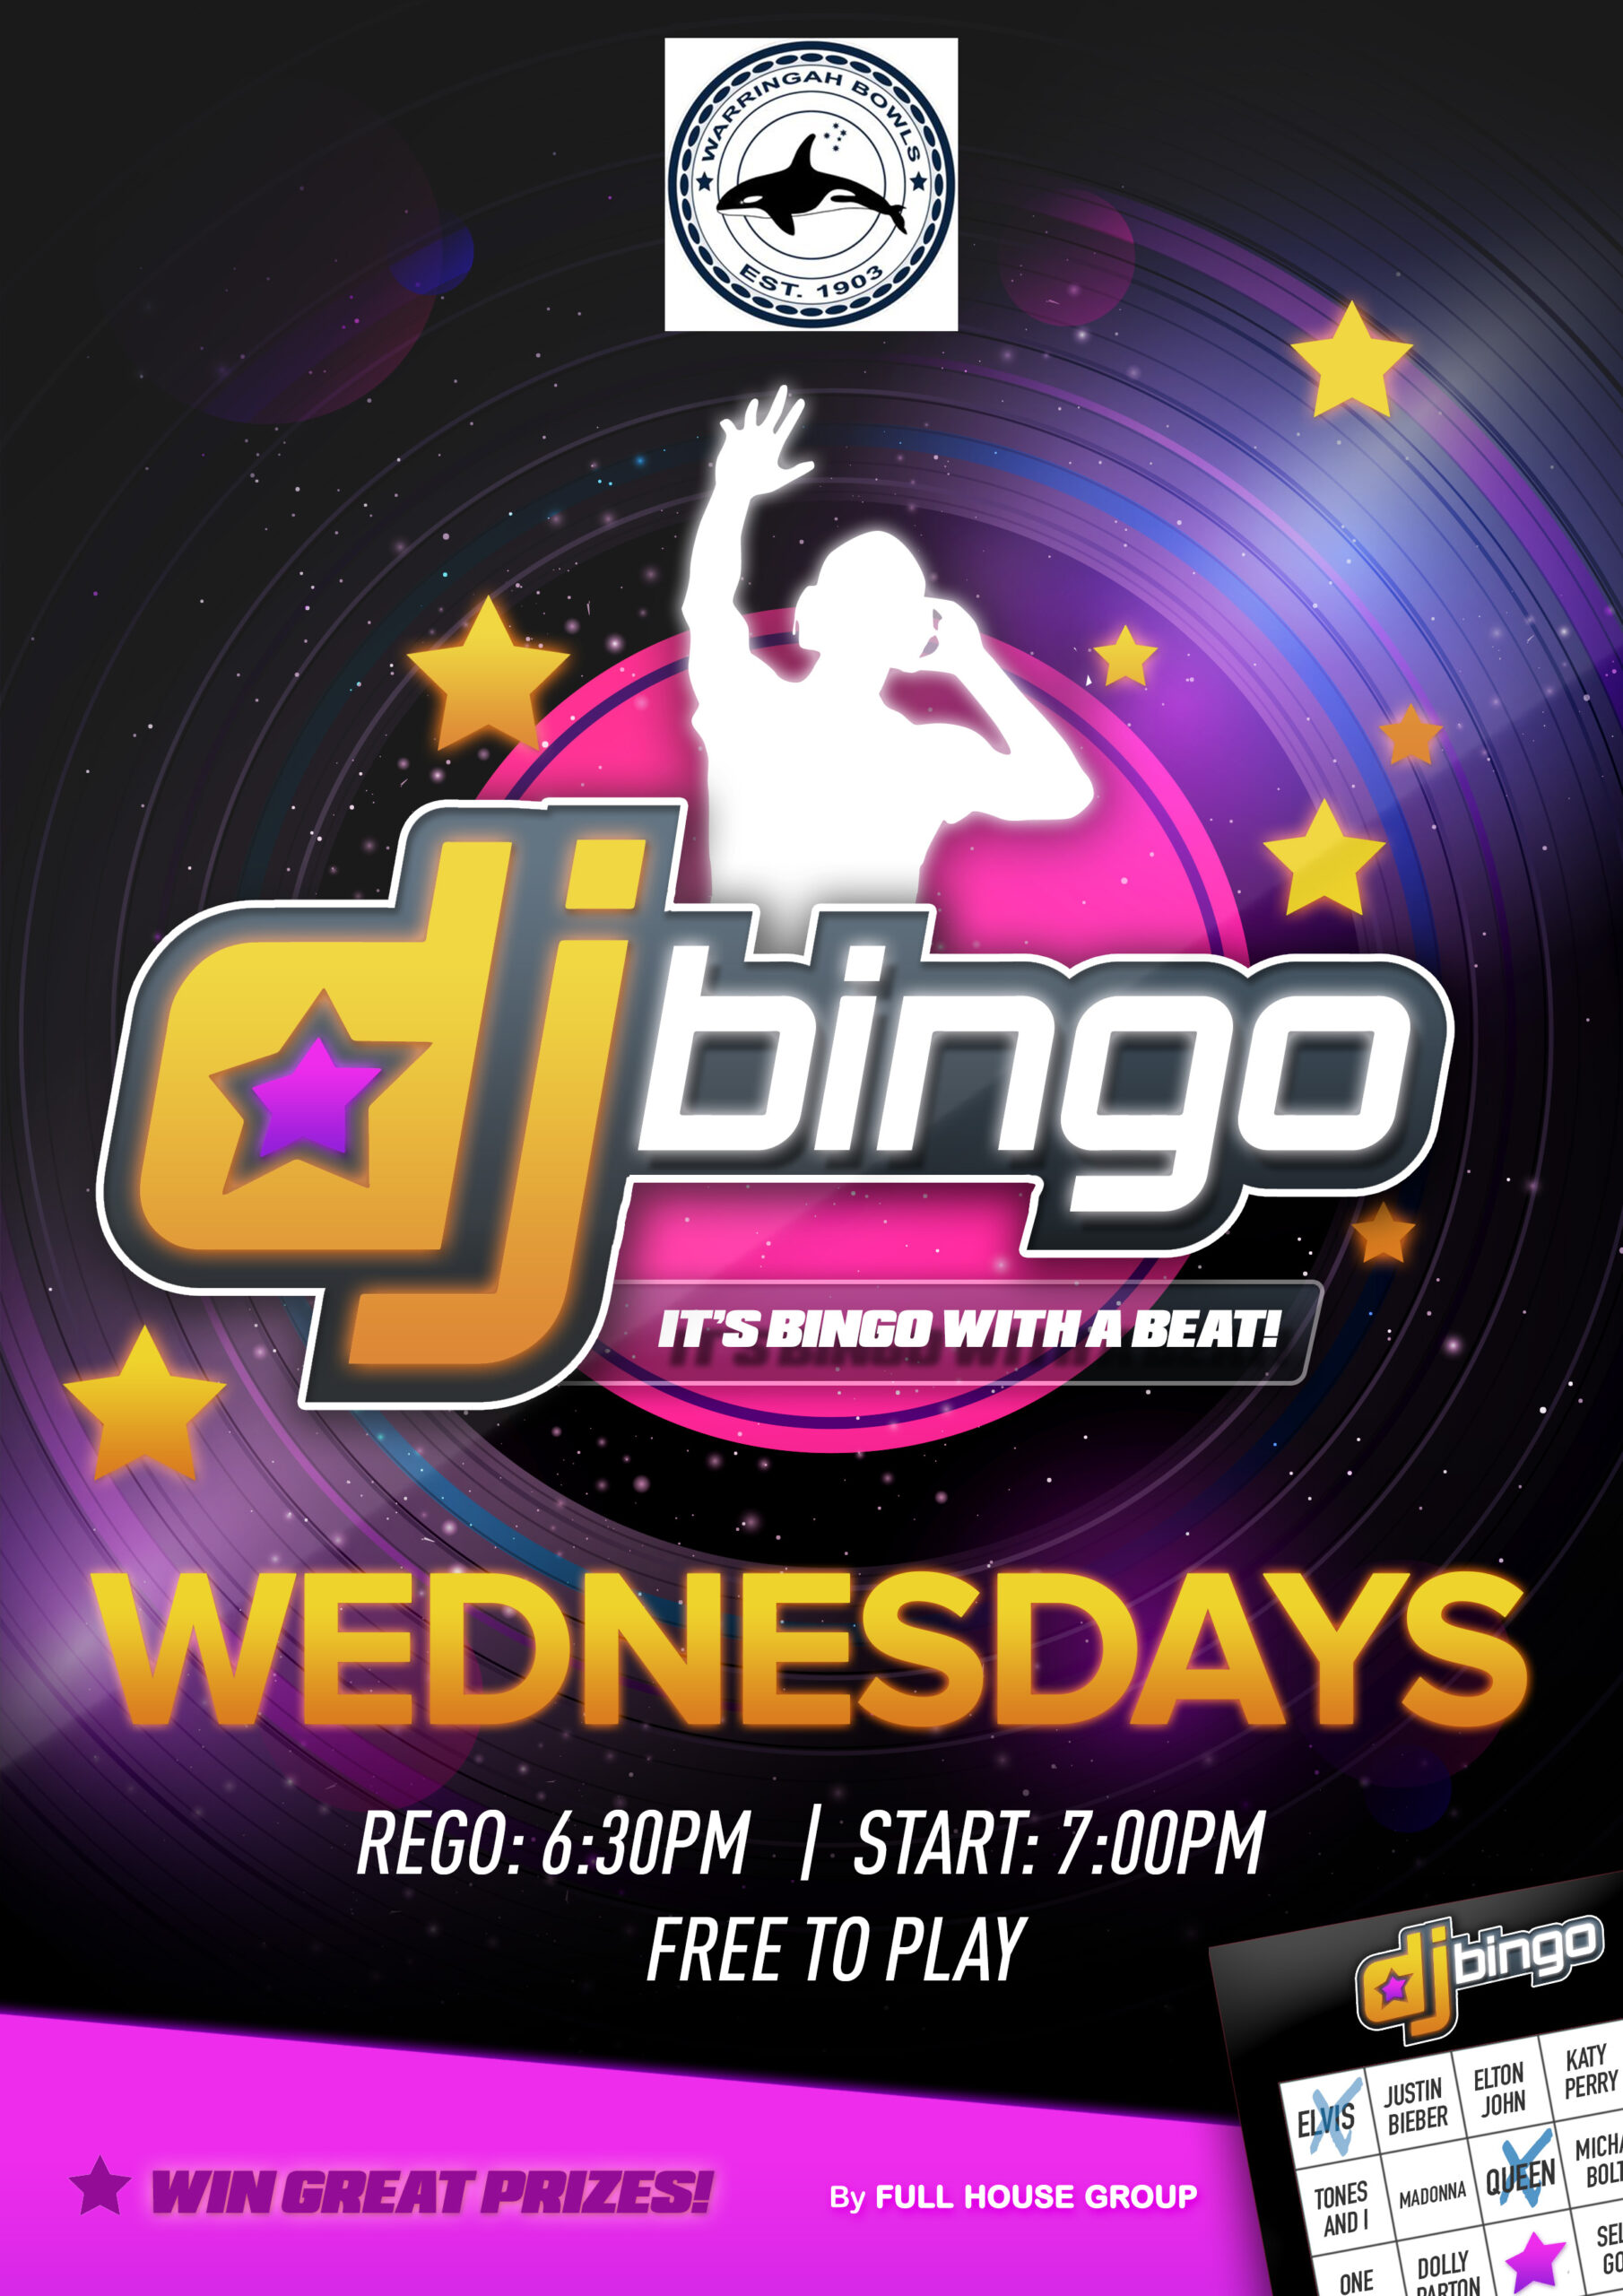 DJ Bingo Wednesday Rego 6:30pm | Start 7:00pm | Free to play